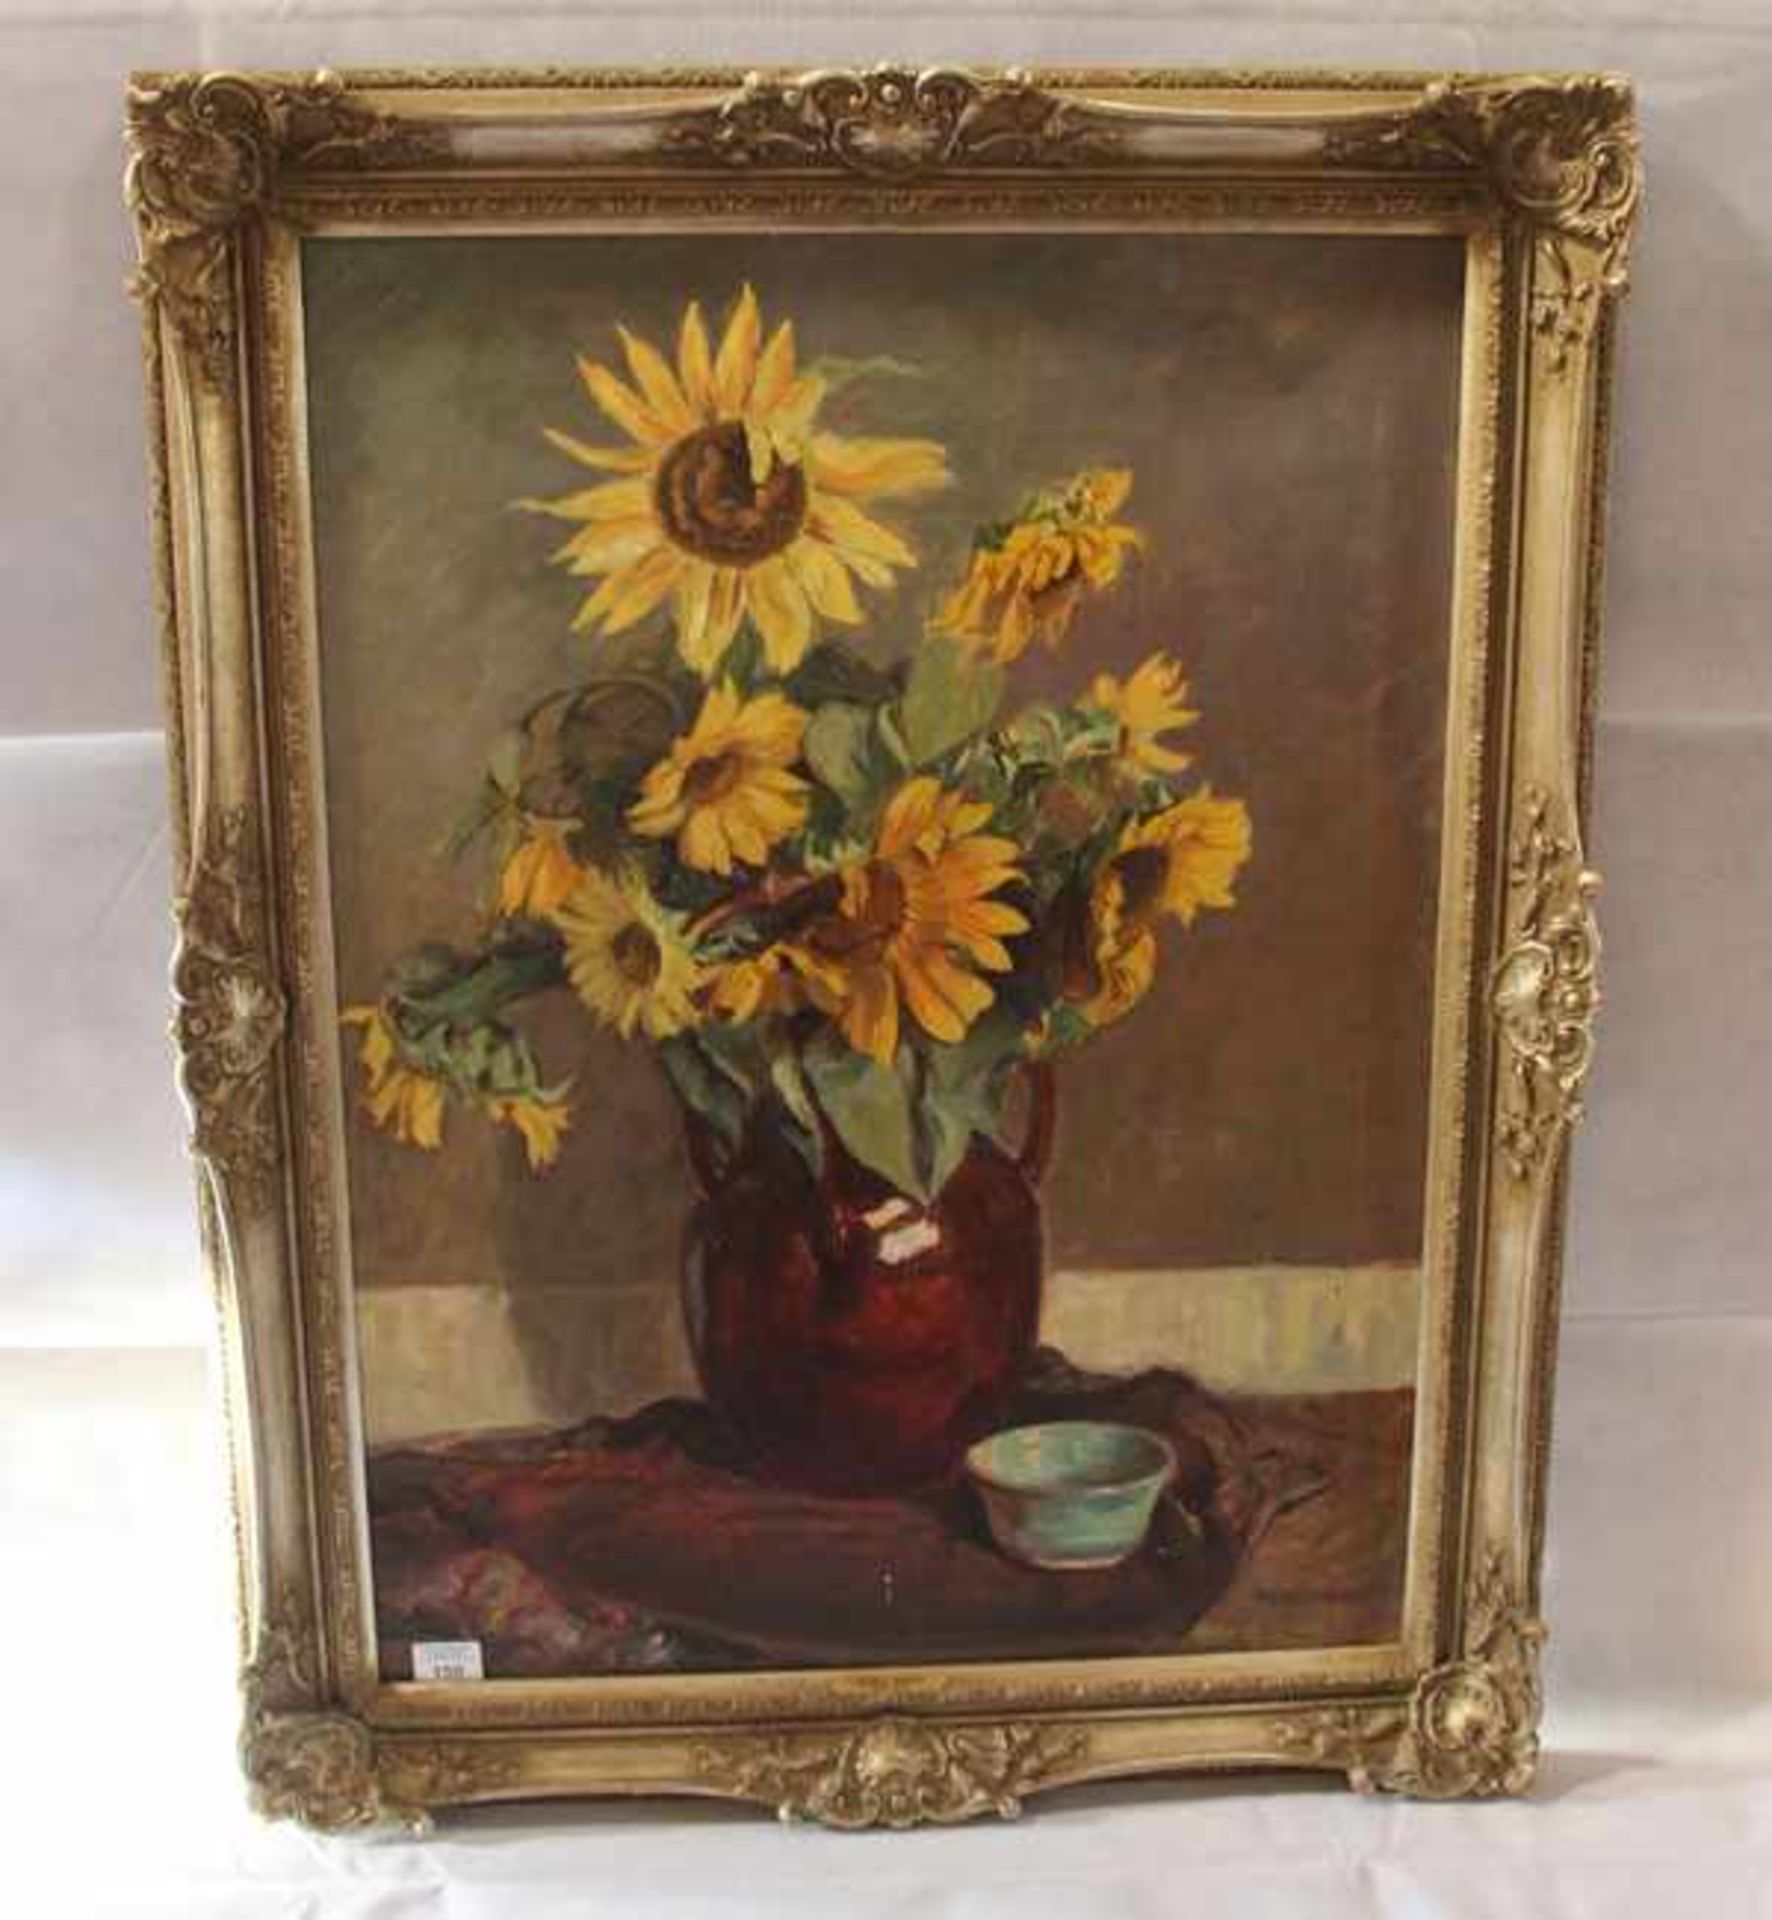 Gemälde ÖL/LW 'Blumenstilleben Sonnenblumen in Vase', signiert Wirnhier Fr. (Friedrich), datiert (